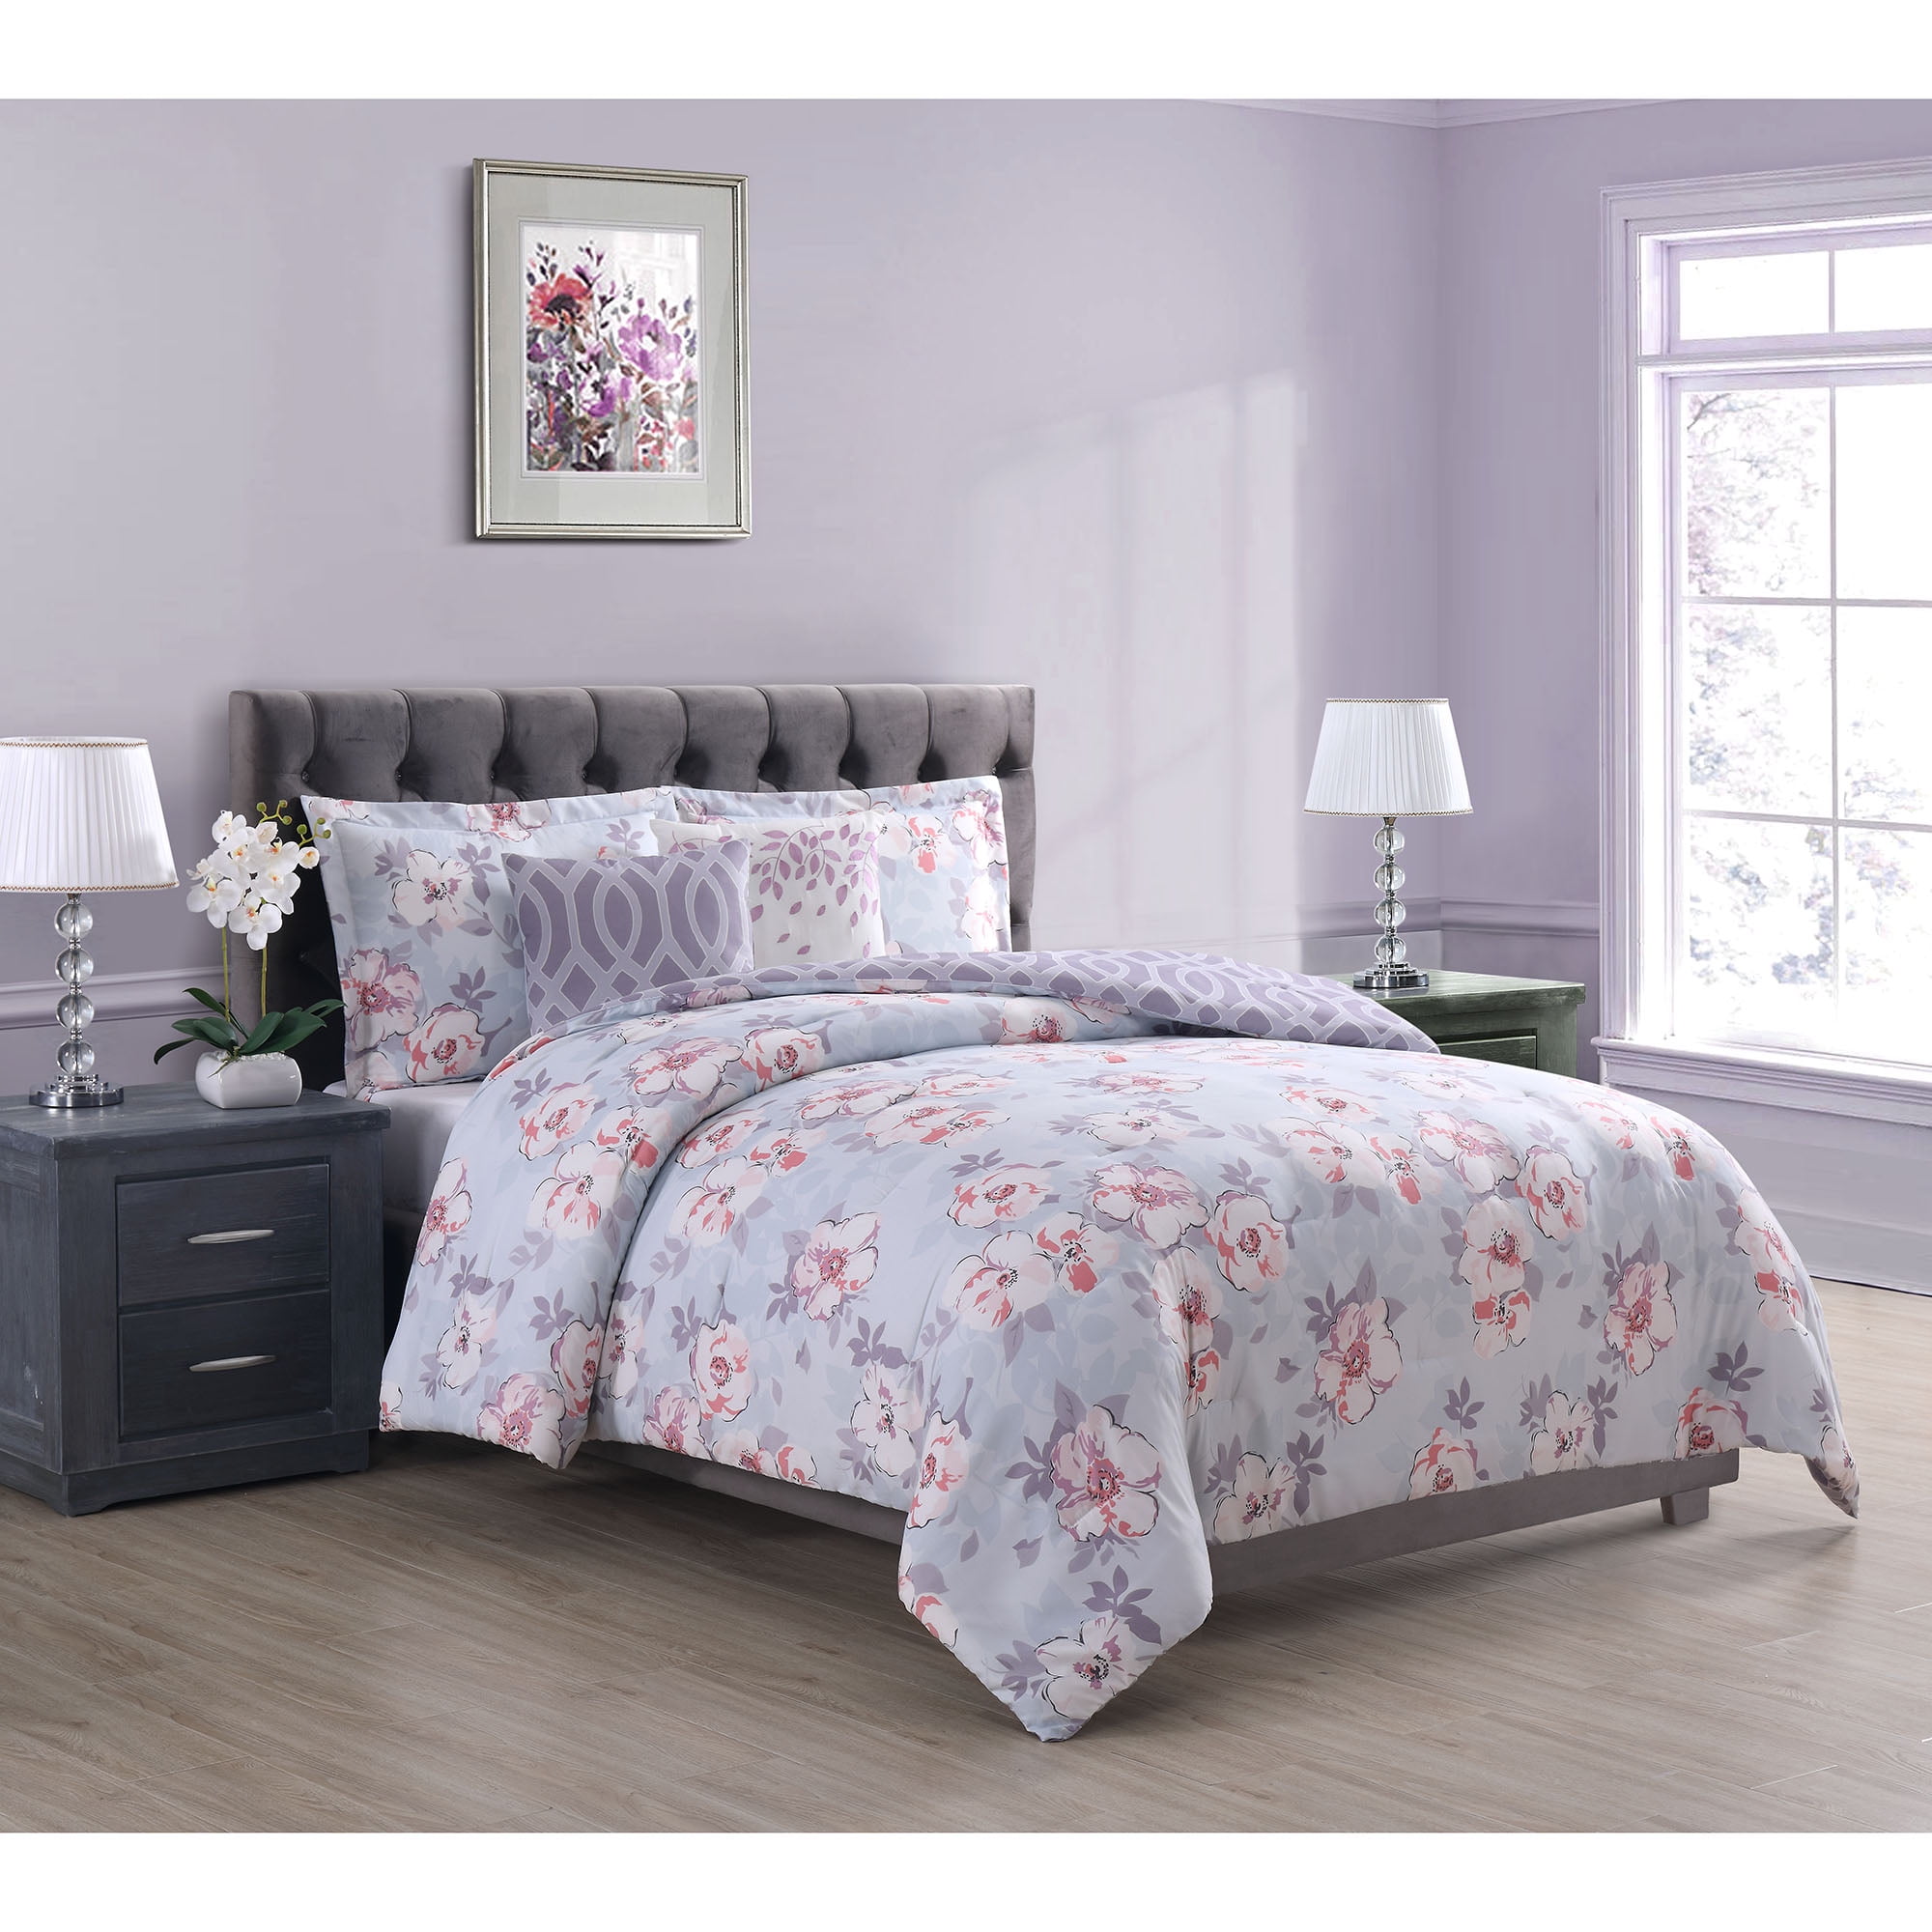 Penelope Floral 5-Piece Comforter Set, King - Walmart.com